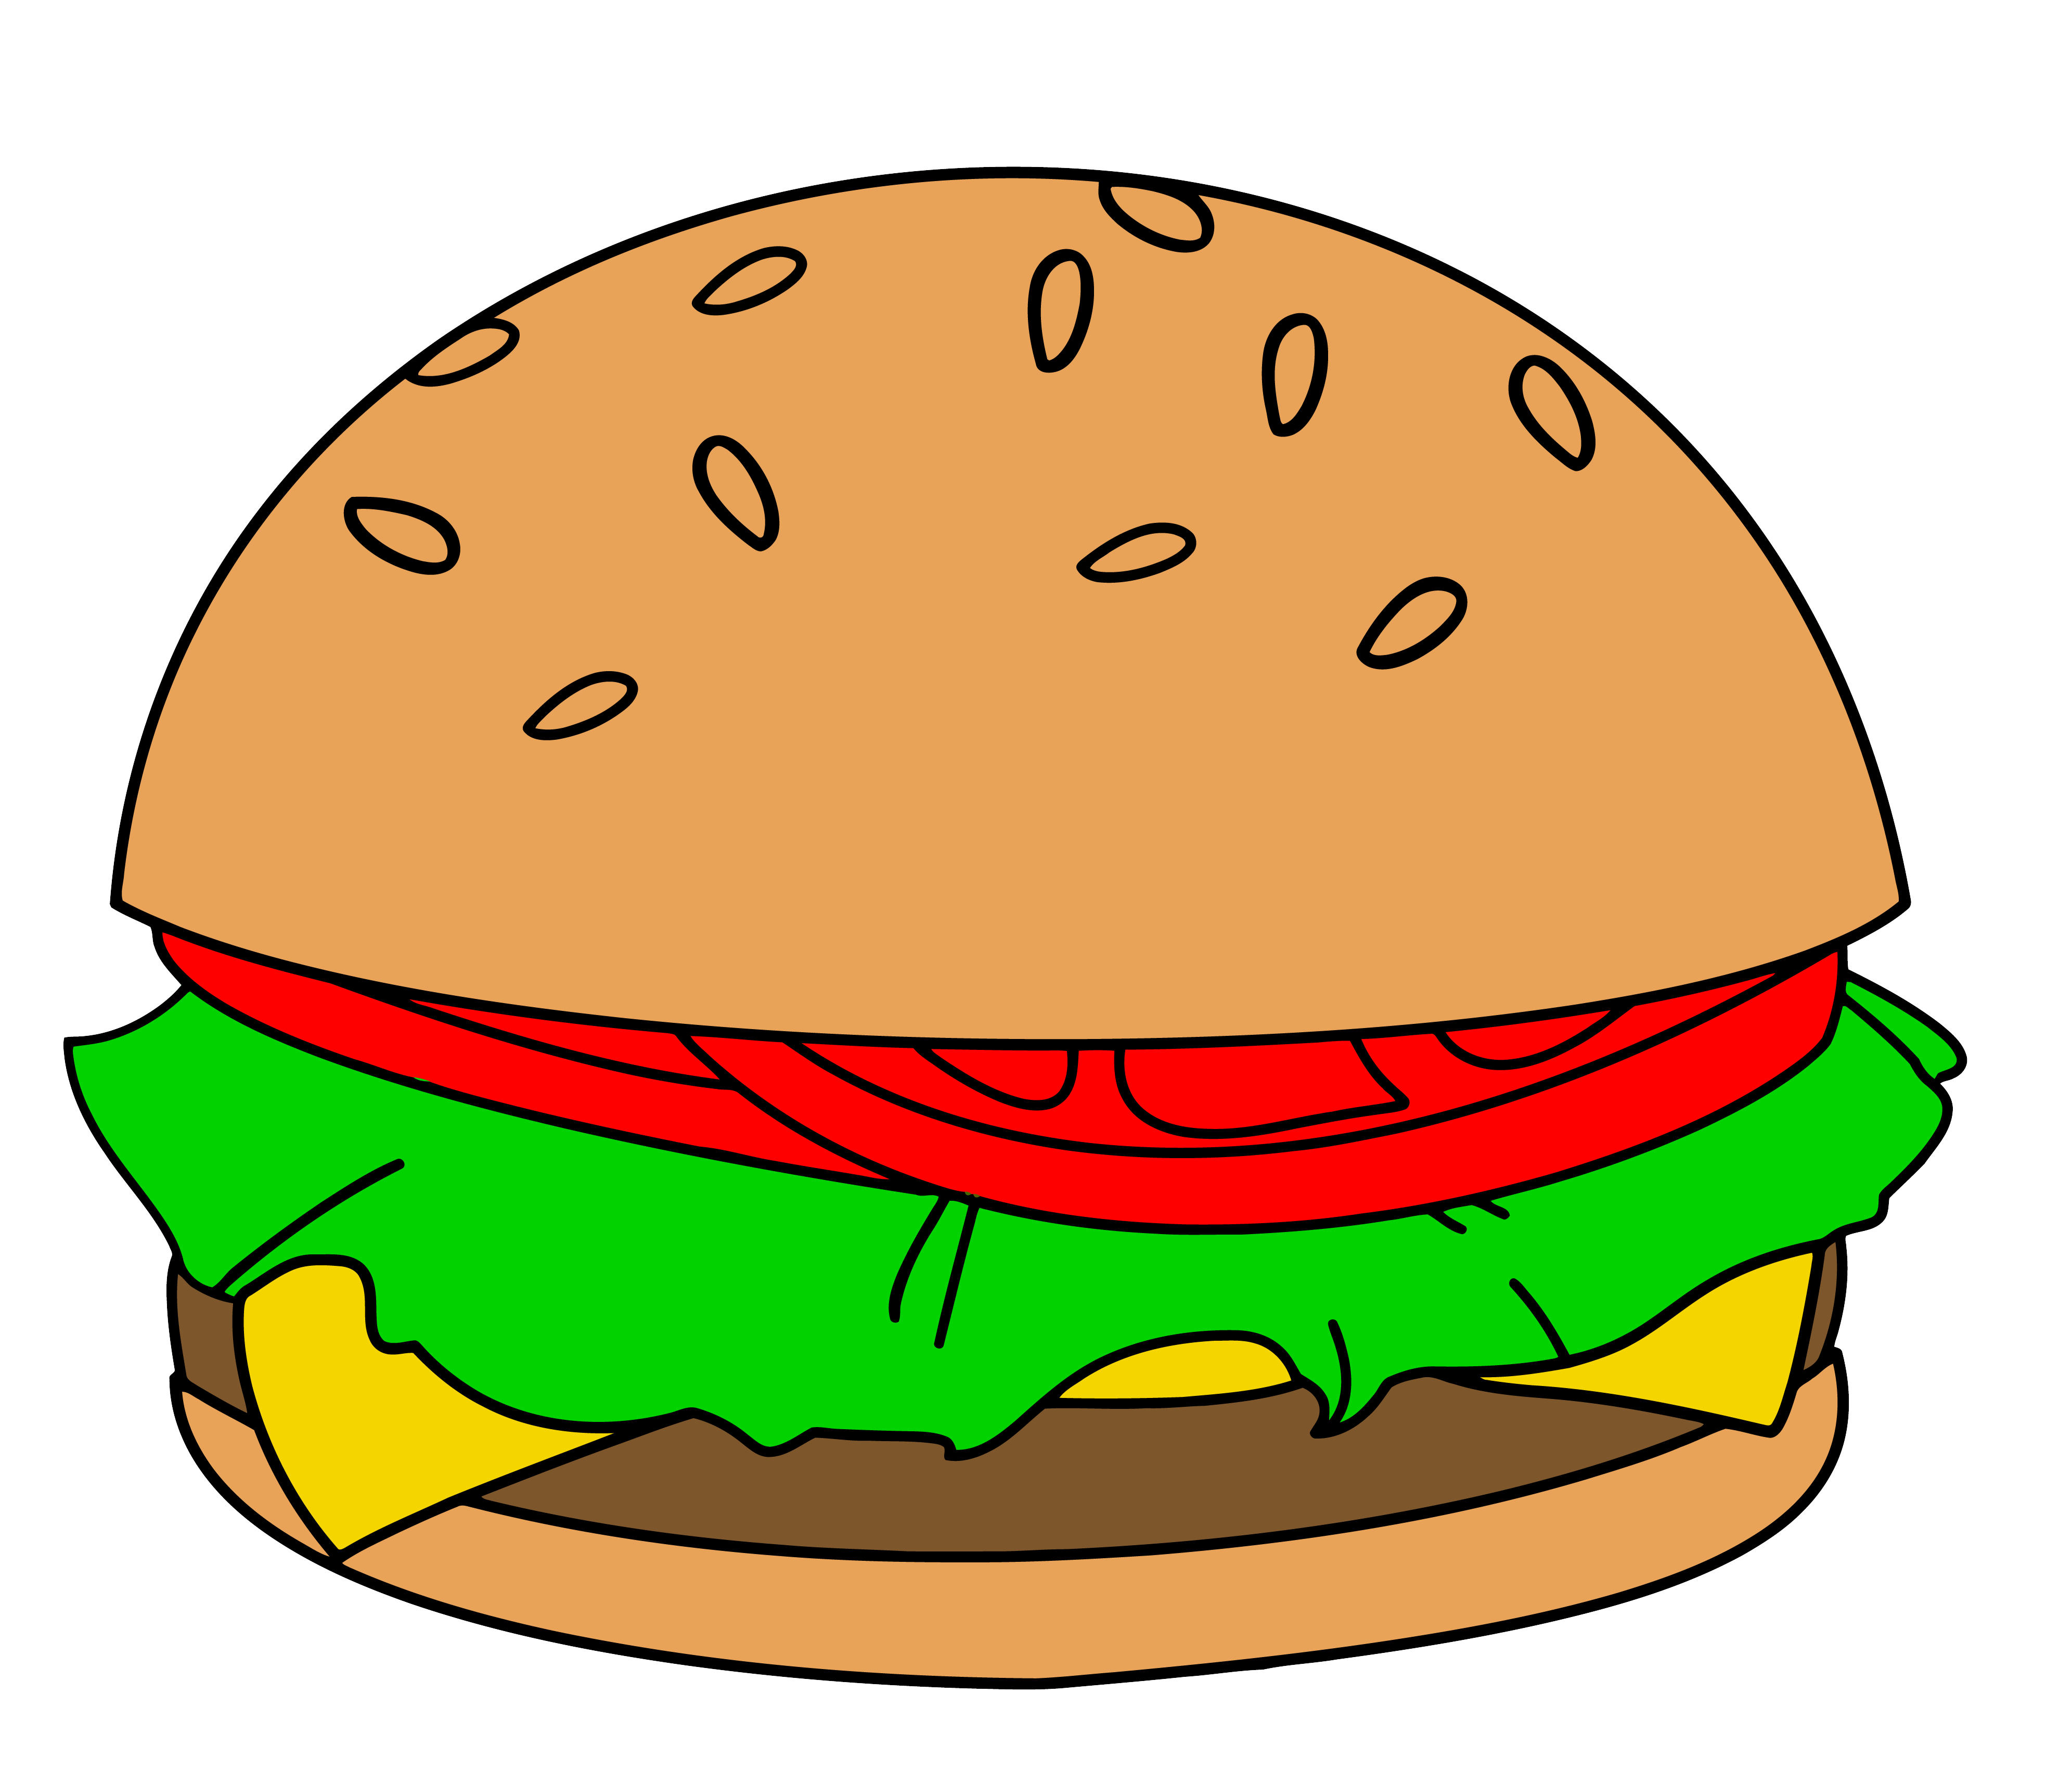 cute cartoon burger